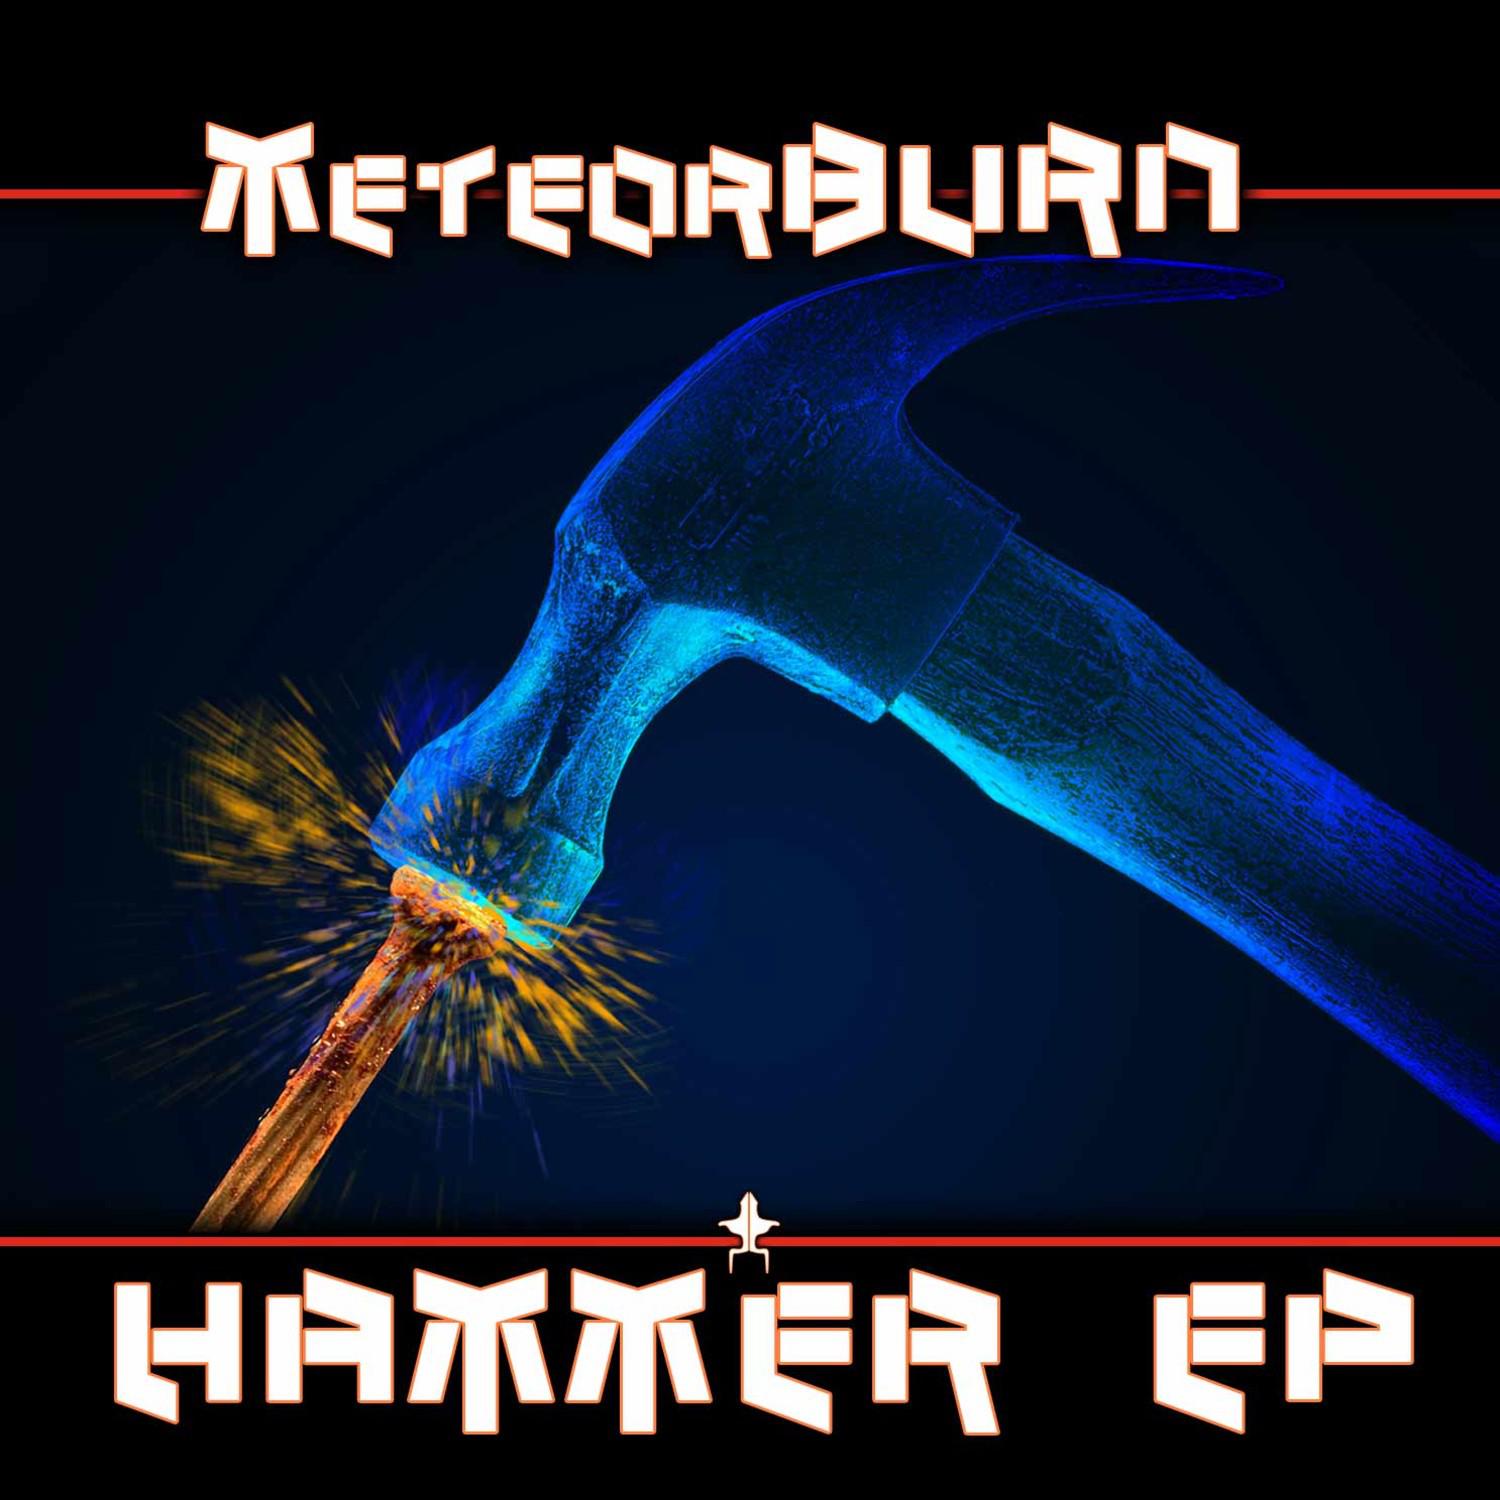 MeteorBurn - Hammer EP